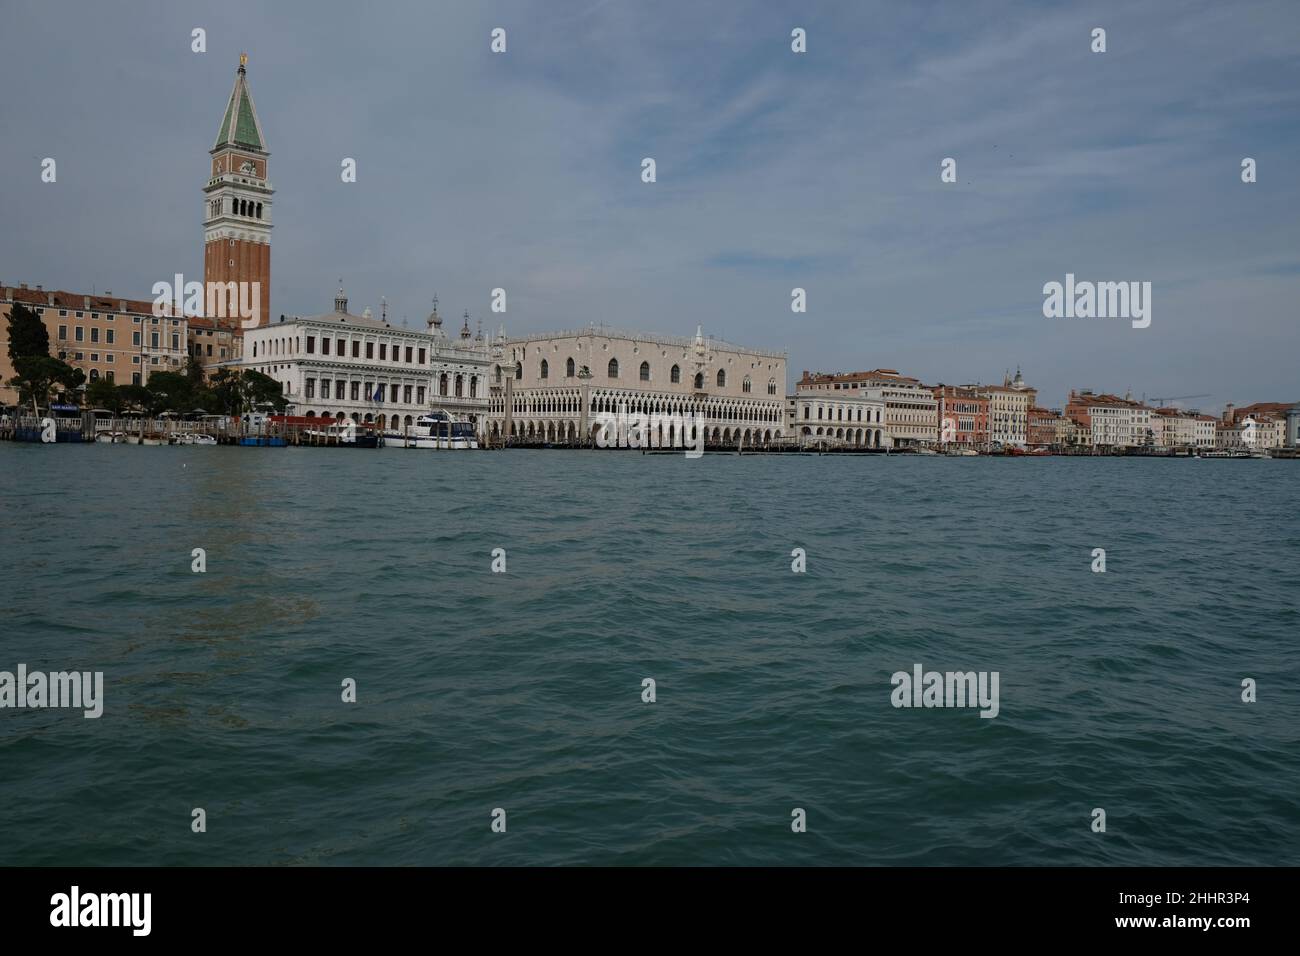 Vedute di Venezia durante il blocco causato dalla malattia del coronavirus. Venezia. Italia, 20 marzo 2020. Foto Stock